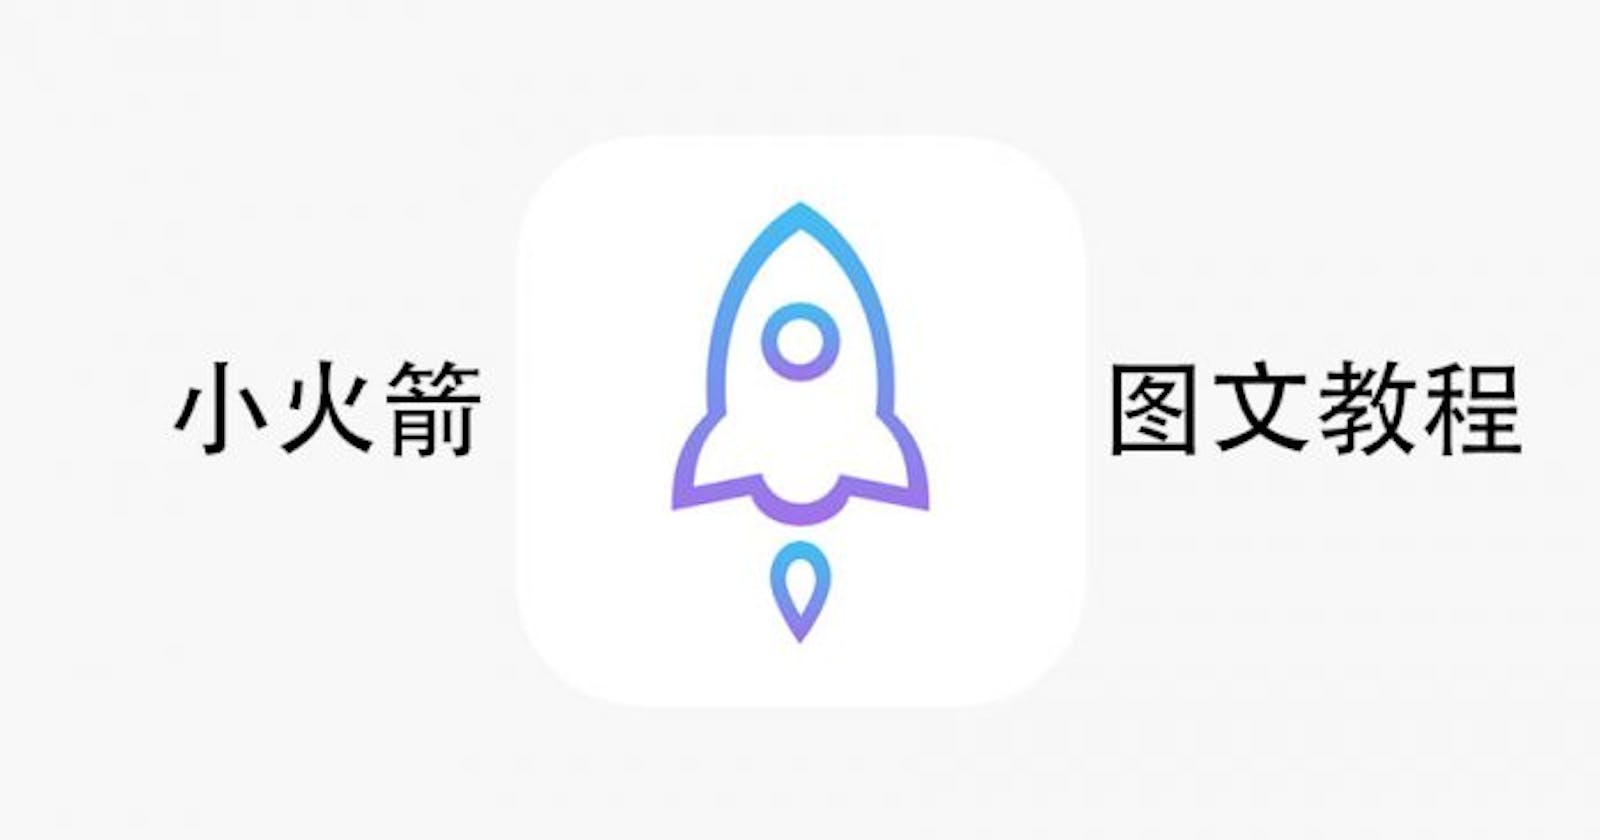 iOS系统小火箭购买 配置 订阅链接,操作说明